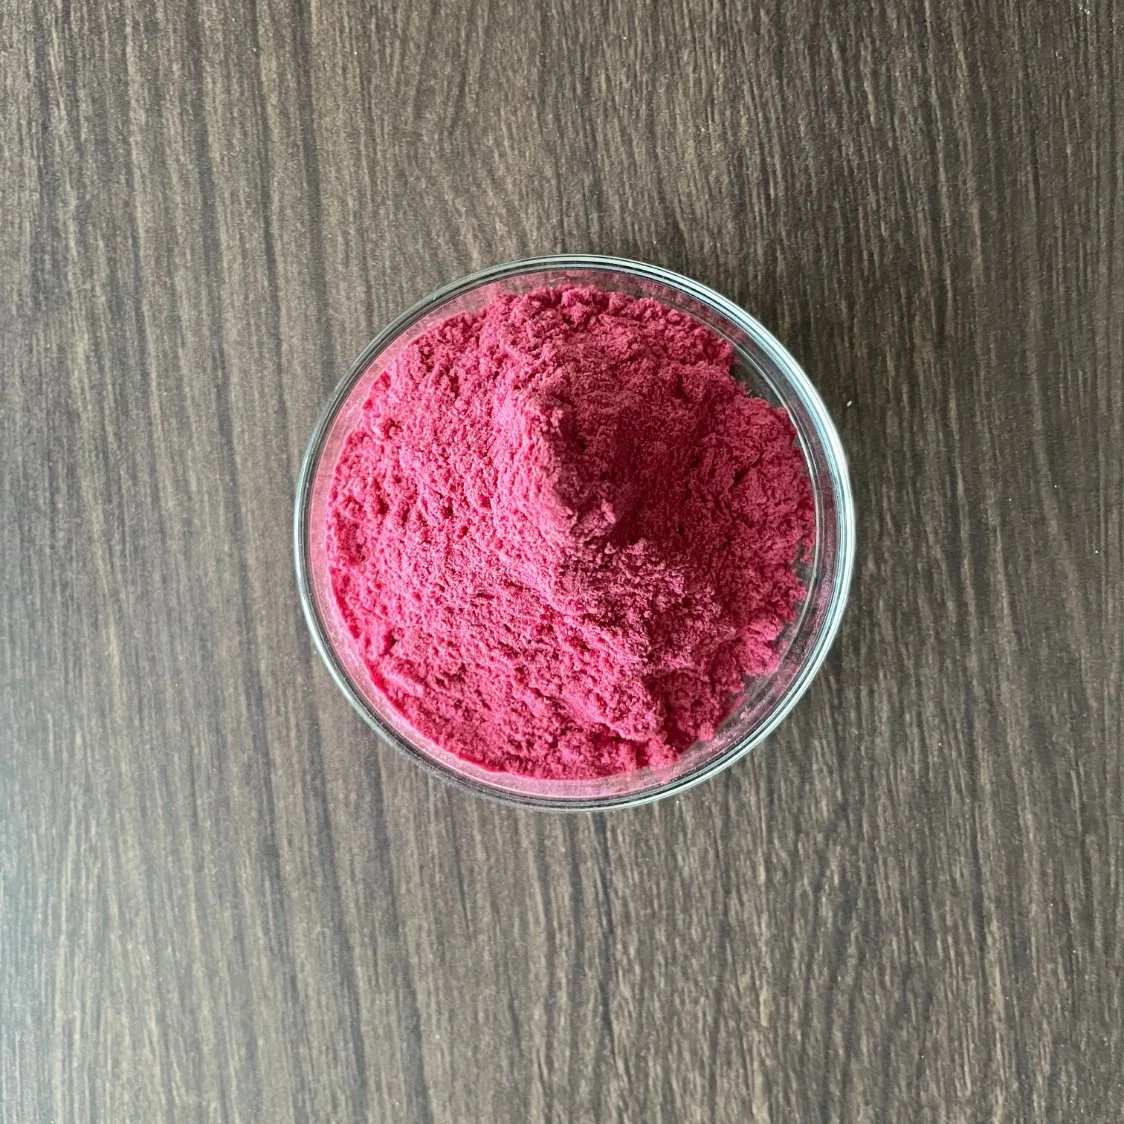 Pink Pitaya порошок заморозки сушеный натуральный красный Дракон фруктовый порошок